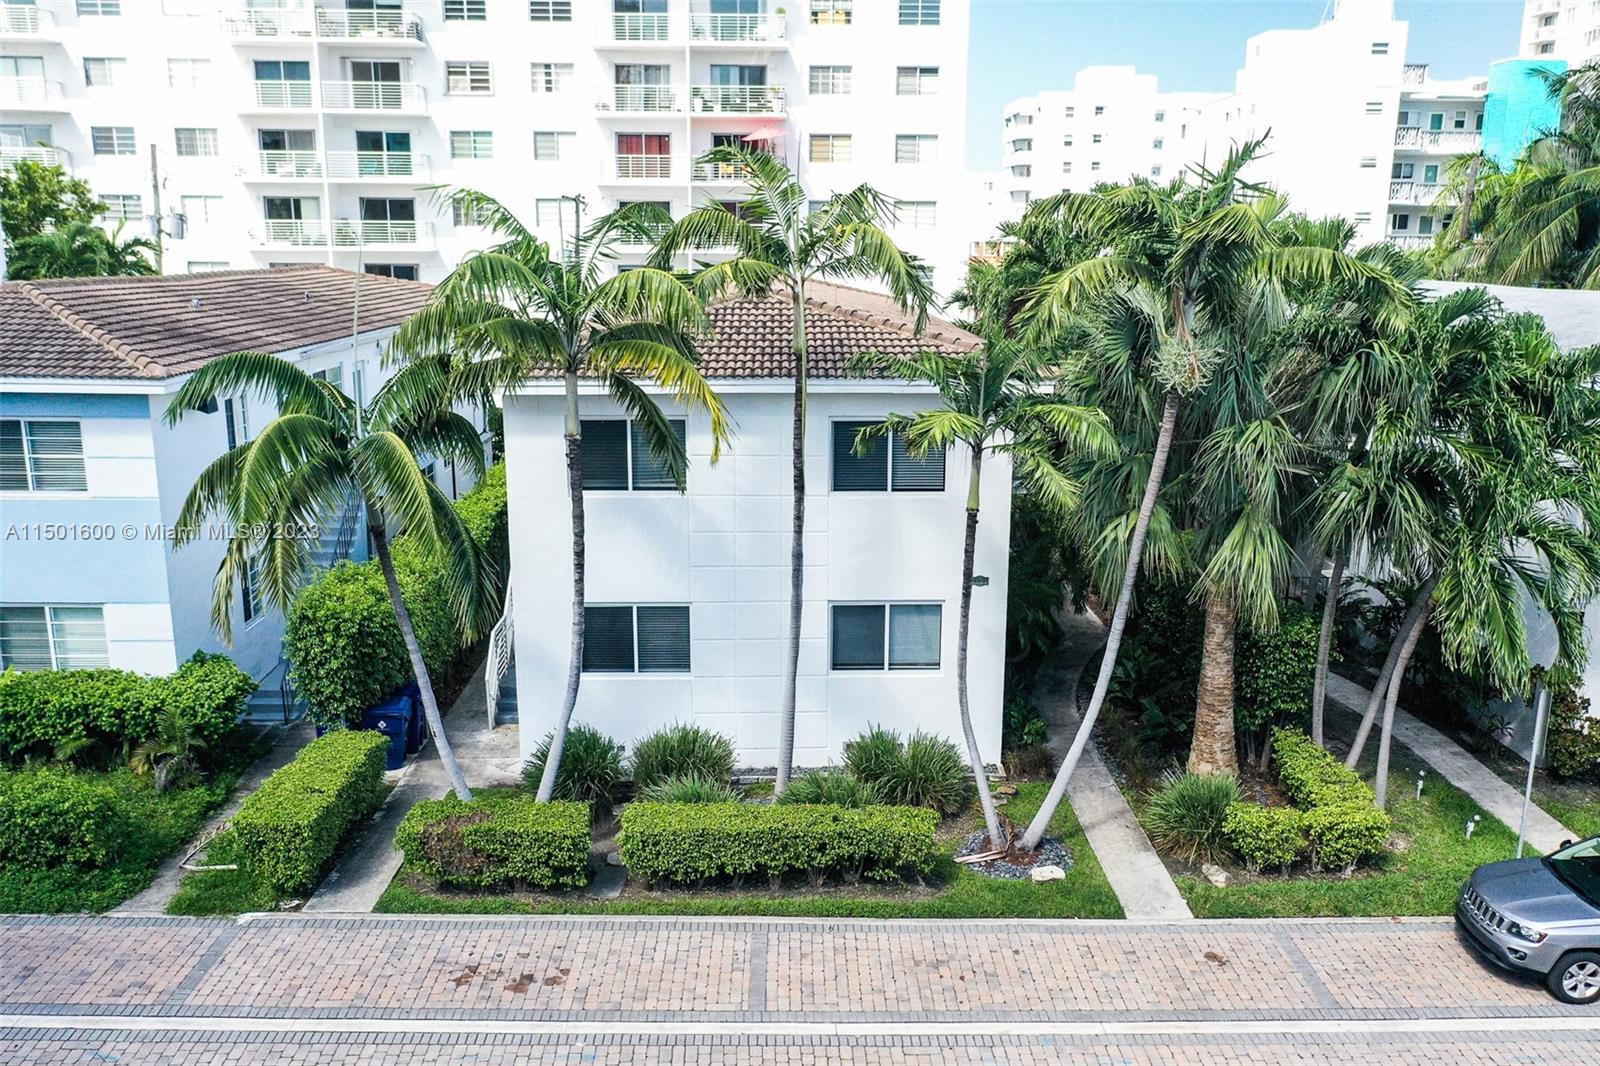 Rental Property at 1451 Lincoln Terrace Ter, Miami Beach, Miami-Dade County, Florida -  - $2,550,000 MO.